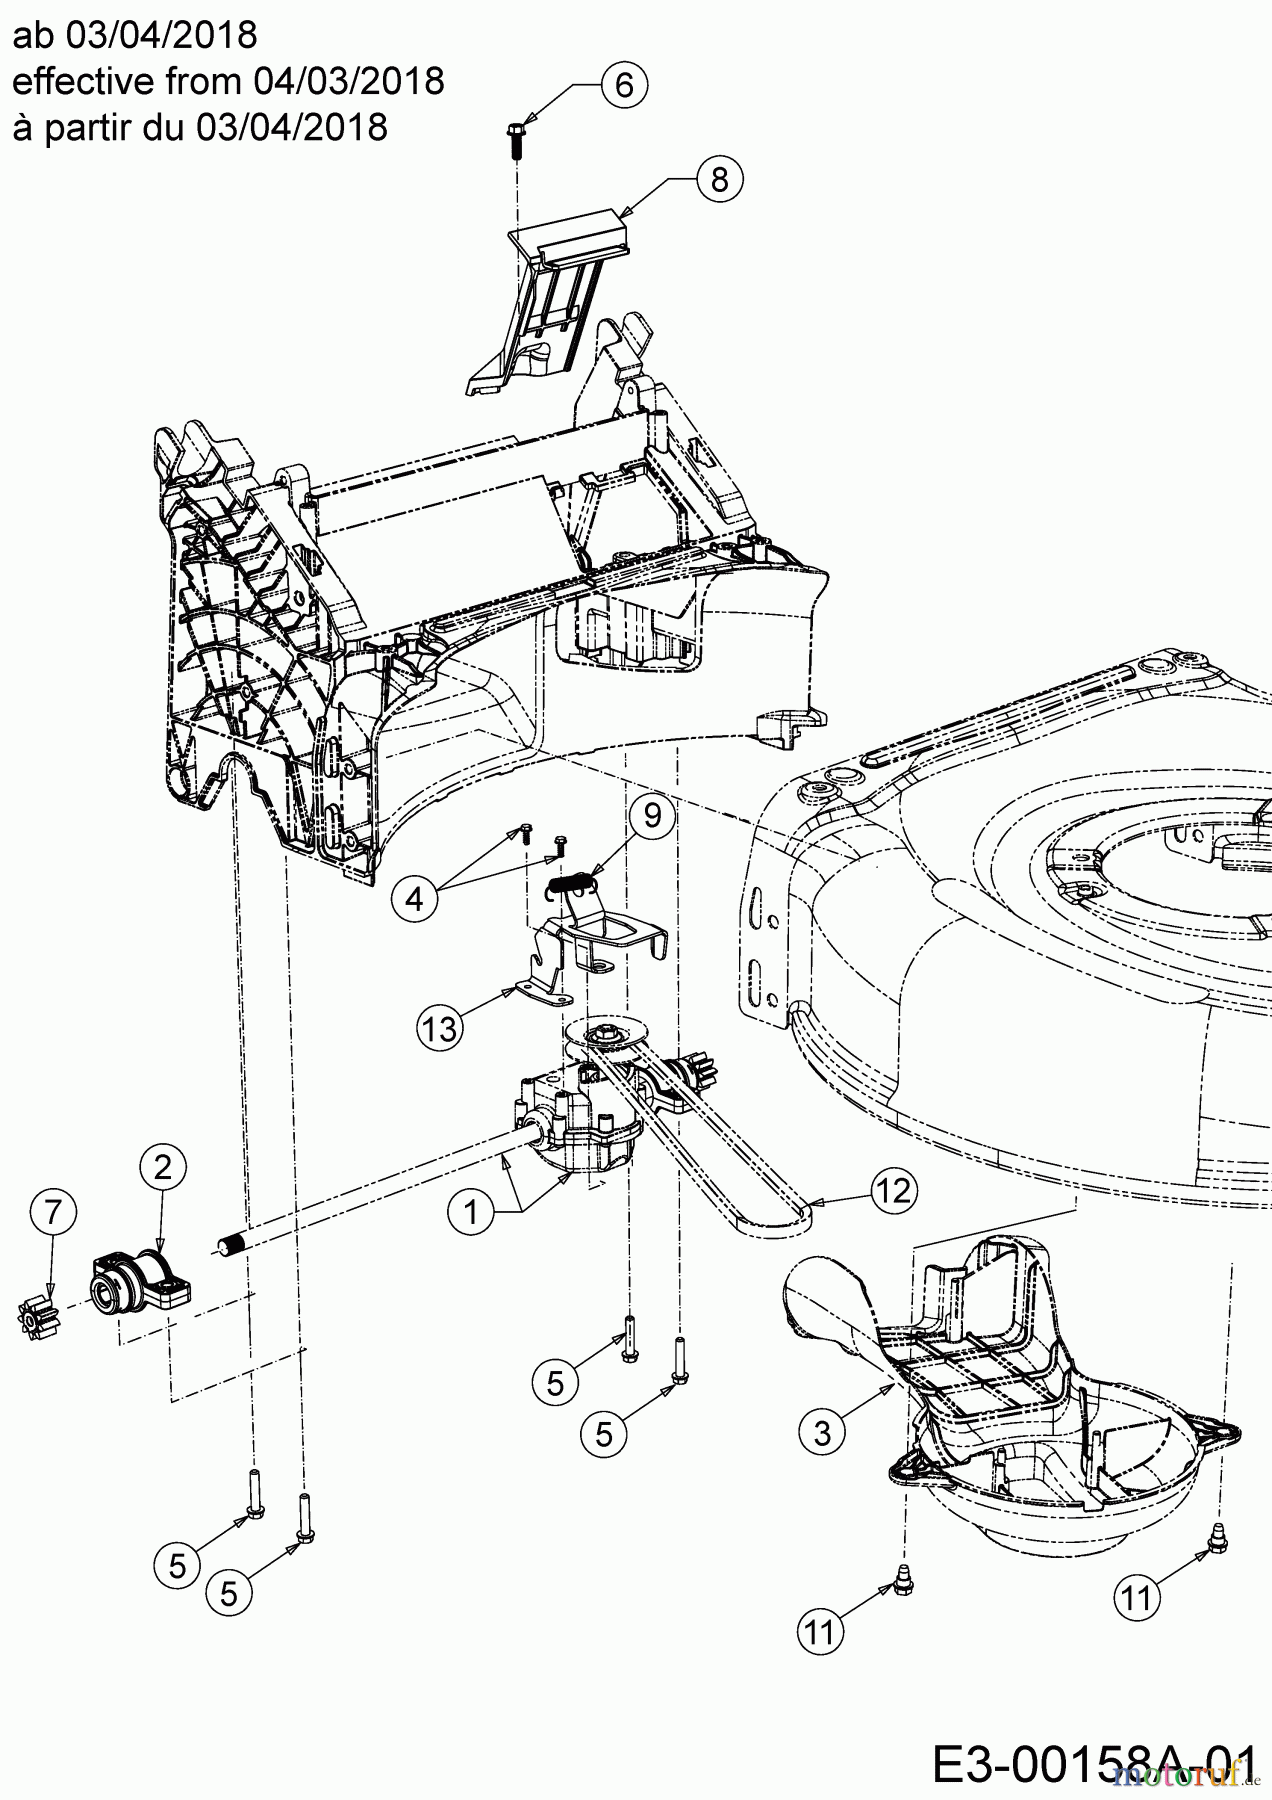  Wolf-Garten Petrol mower self propelled AH 4200 H 12A-LV5B650  (2019) Gearbox, Belt from 04/03/2018